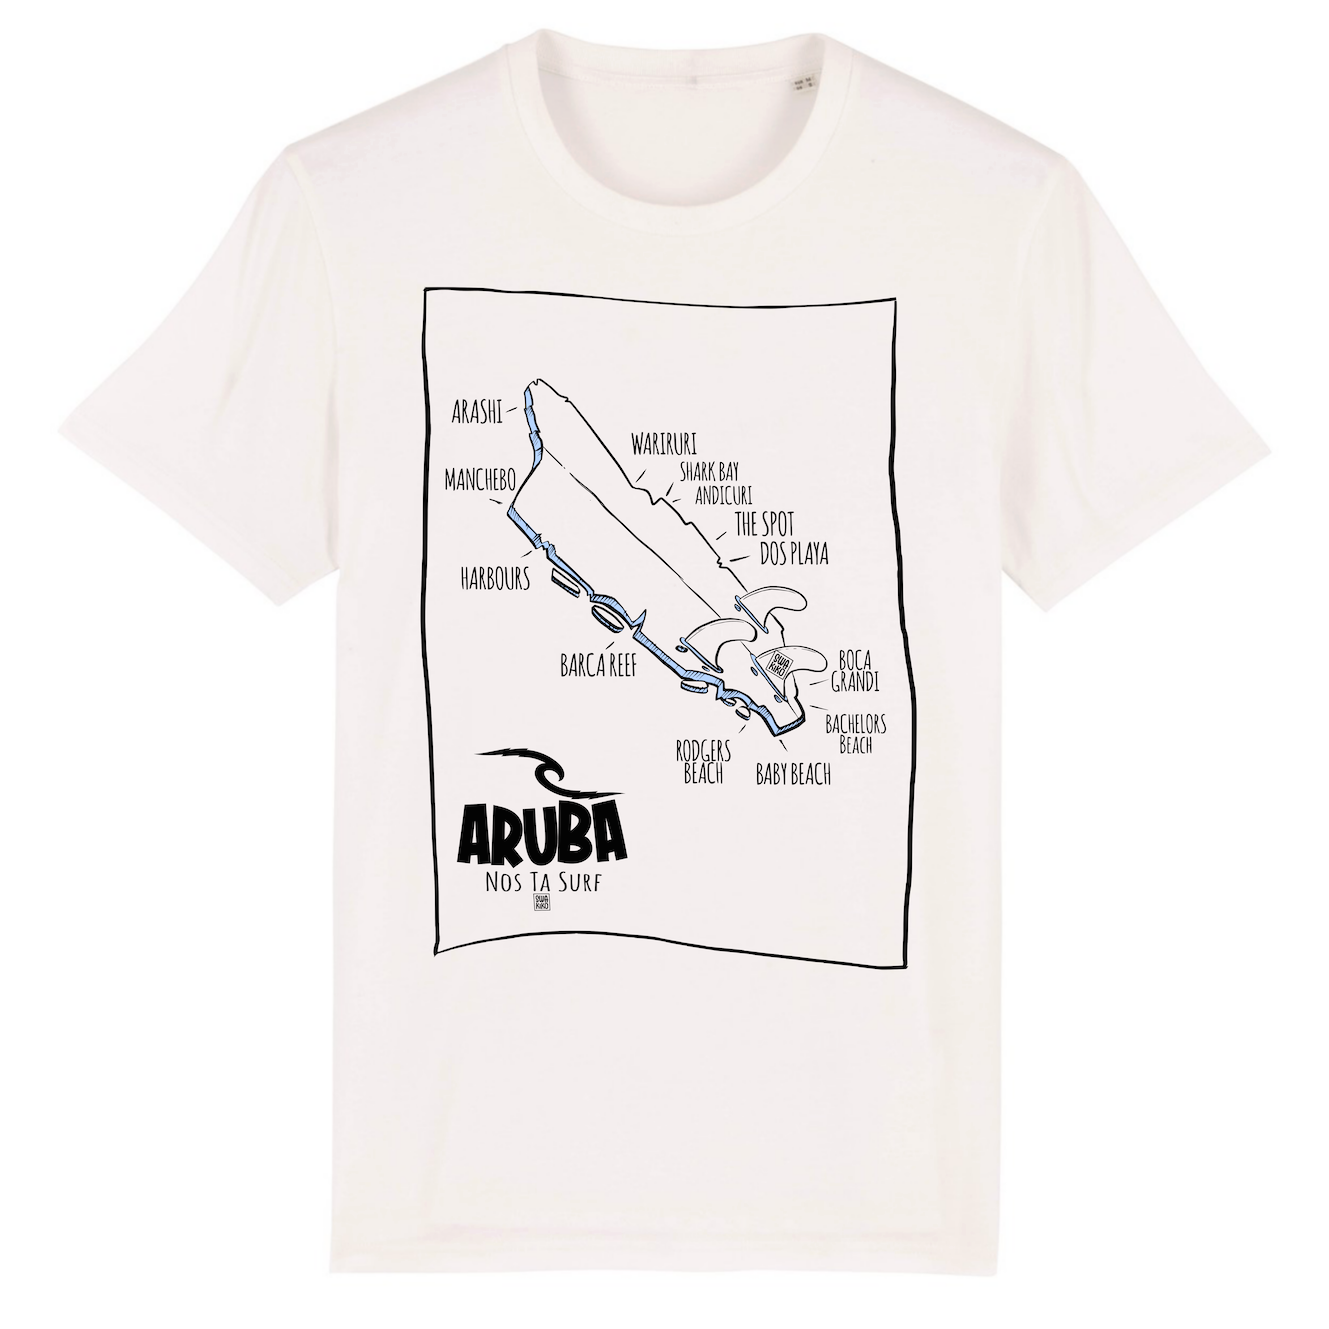 Wit T-shirt met zeer origineel design van Aruba als surfboard